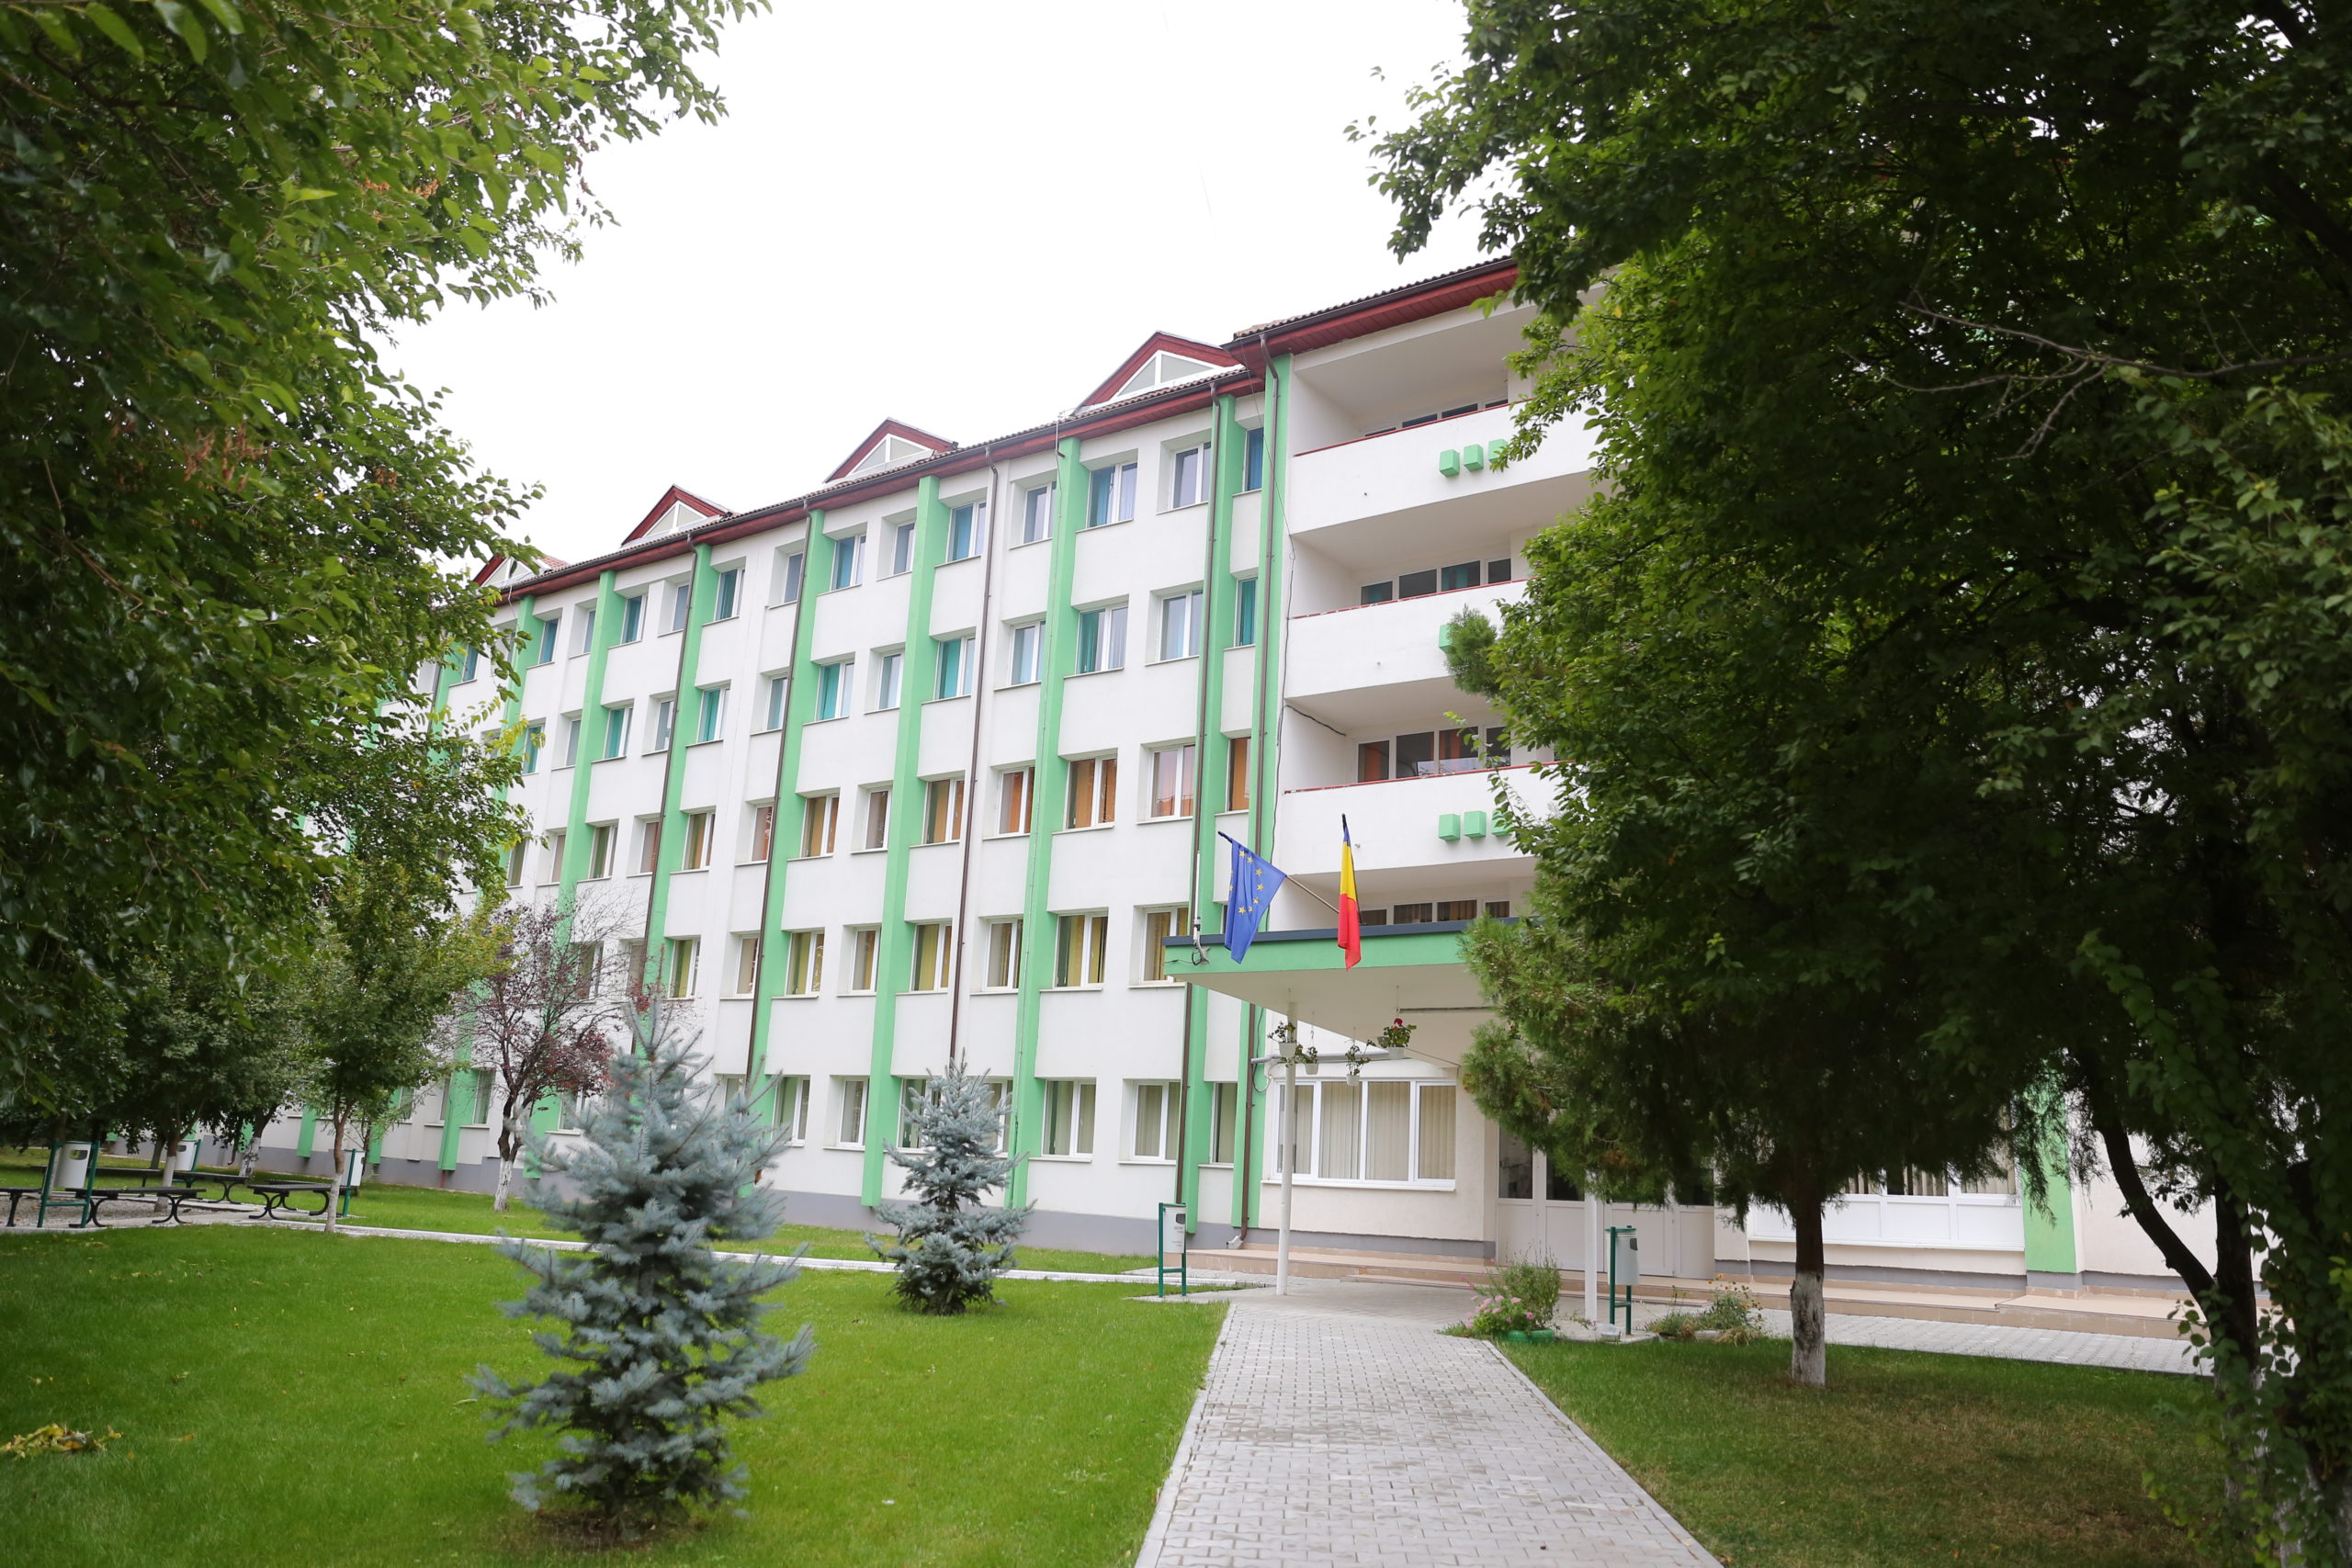 Universitatea din Craiova are peste 2.000 de locuri de cazare în căminele studenţeşti